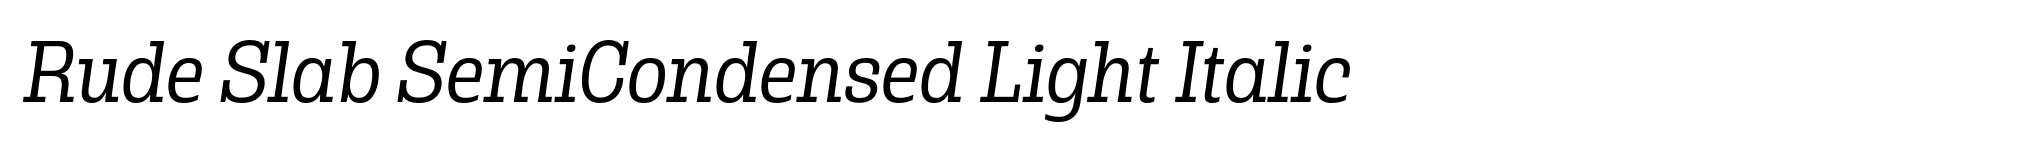 Rude Slab SemiCondensed Light Italic image